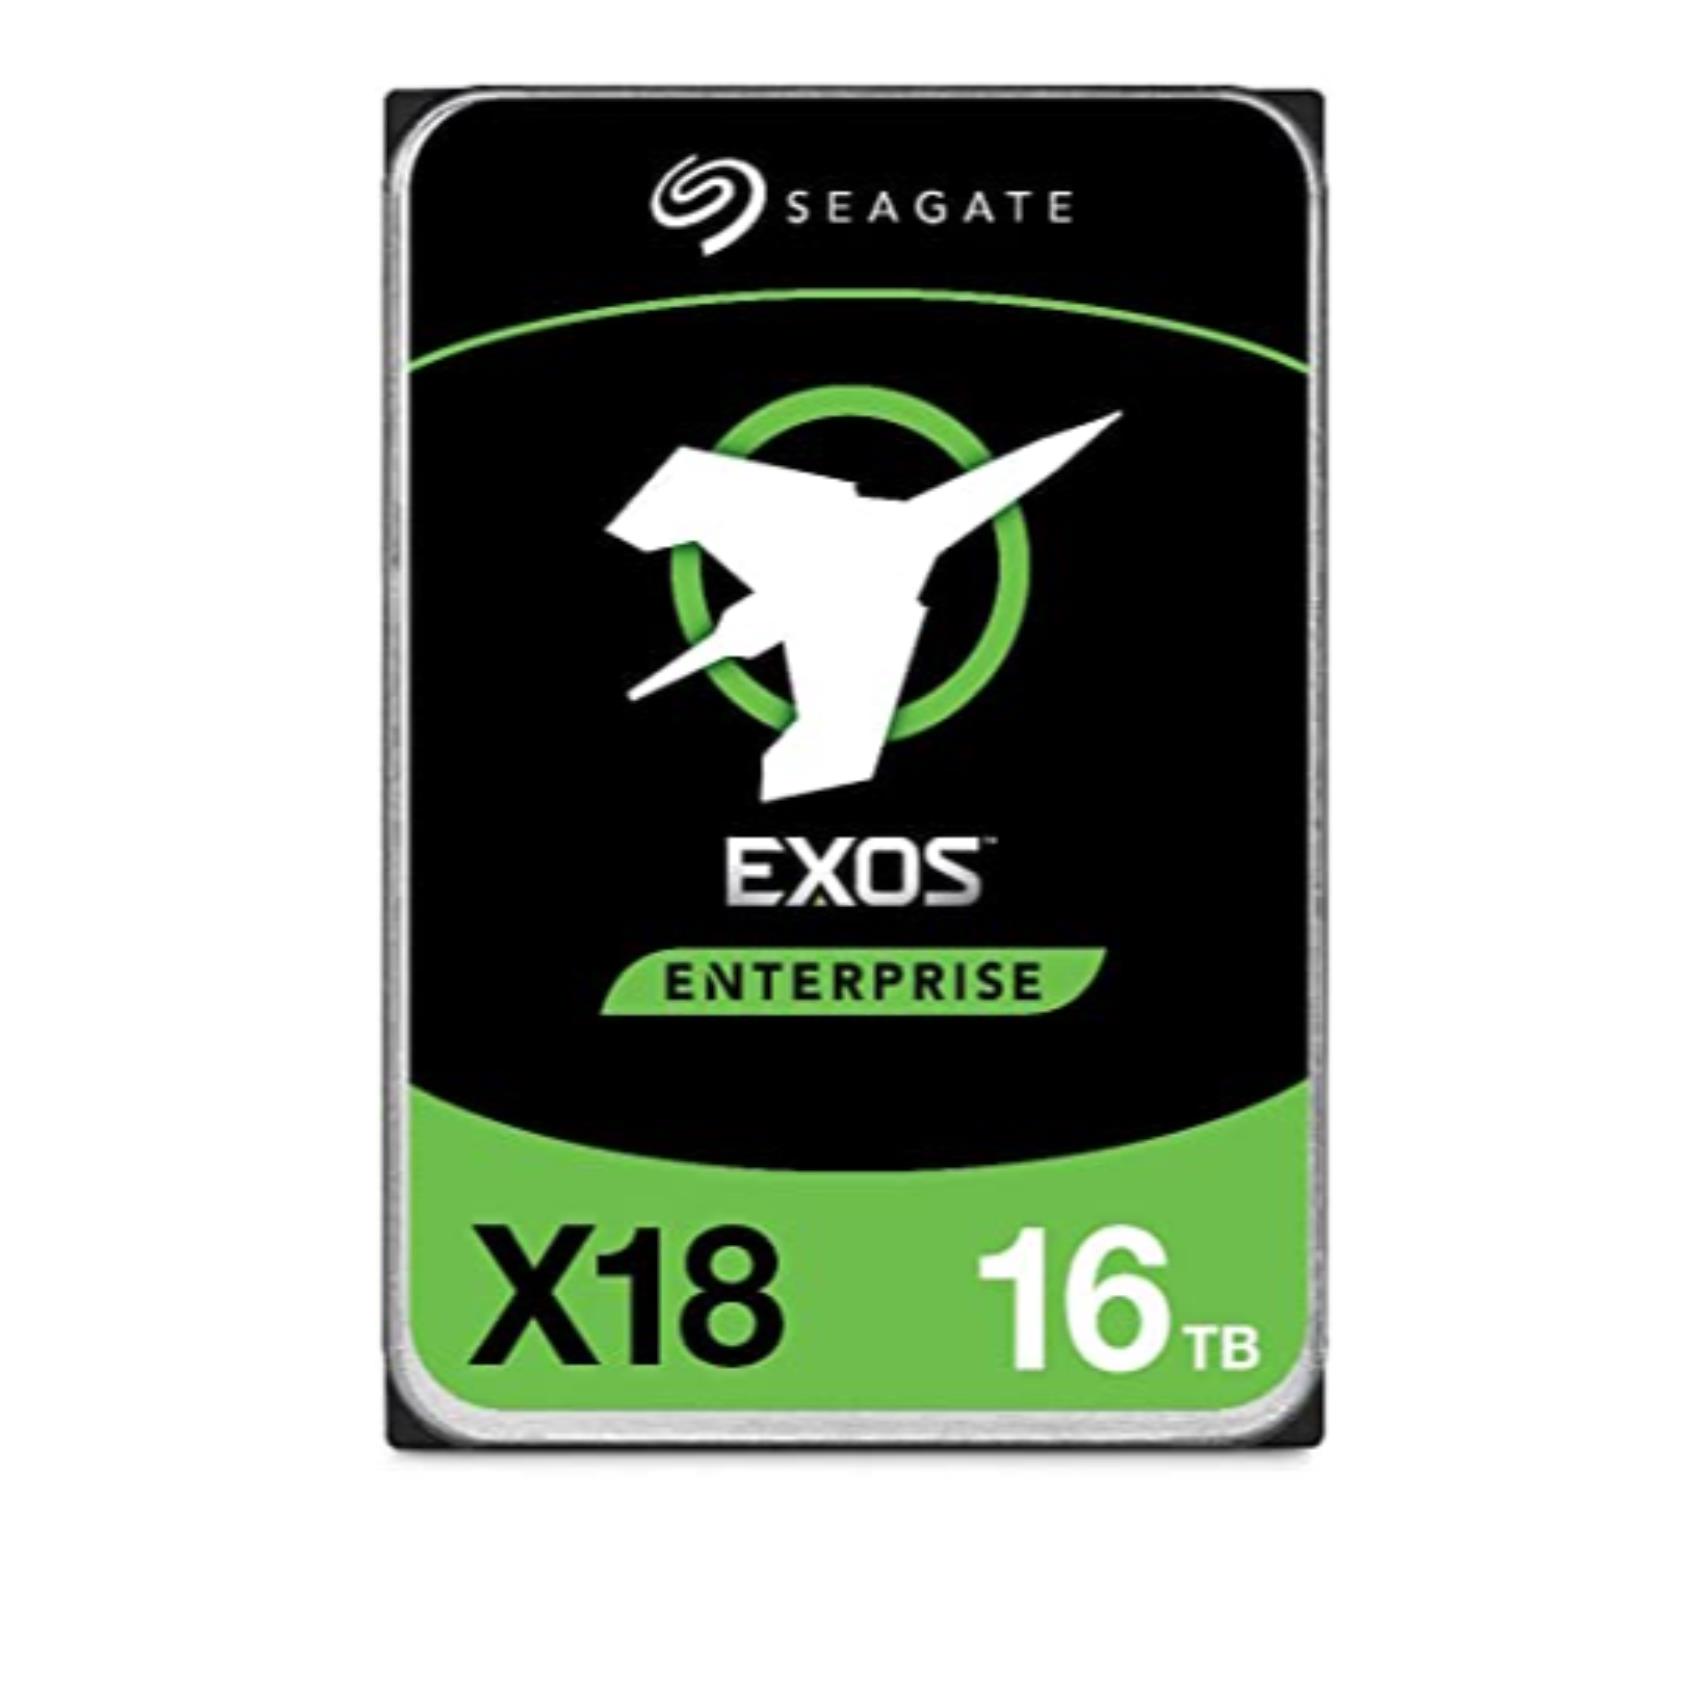 Image of SEAGATE 16TB EXOS X18 ENTERP. SATA 3.5 7200 ST16000NM000J